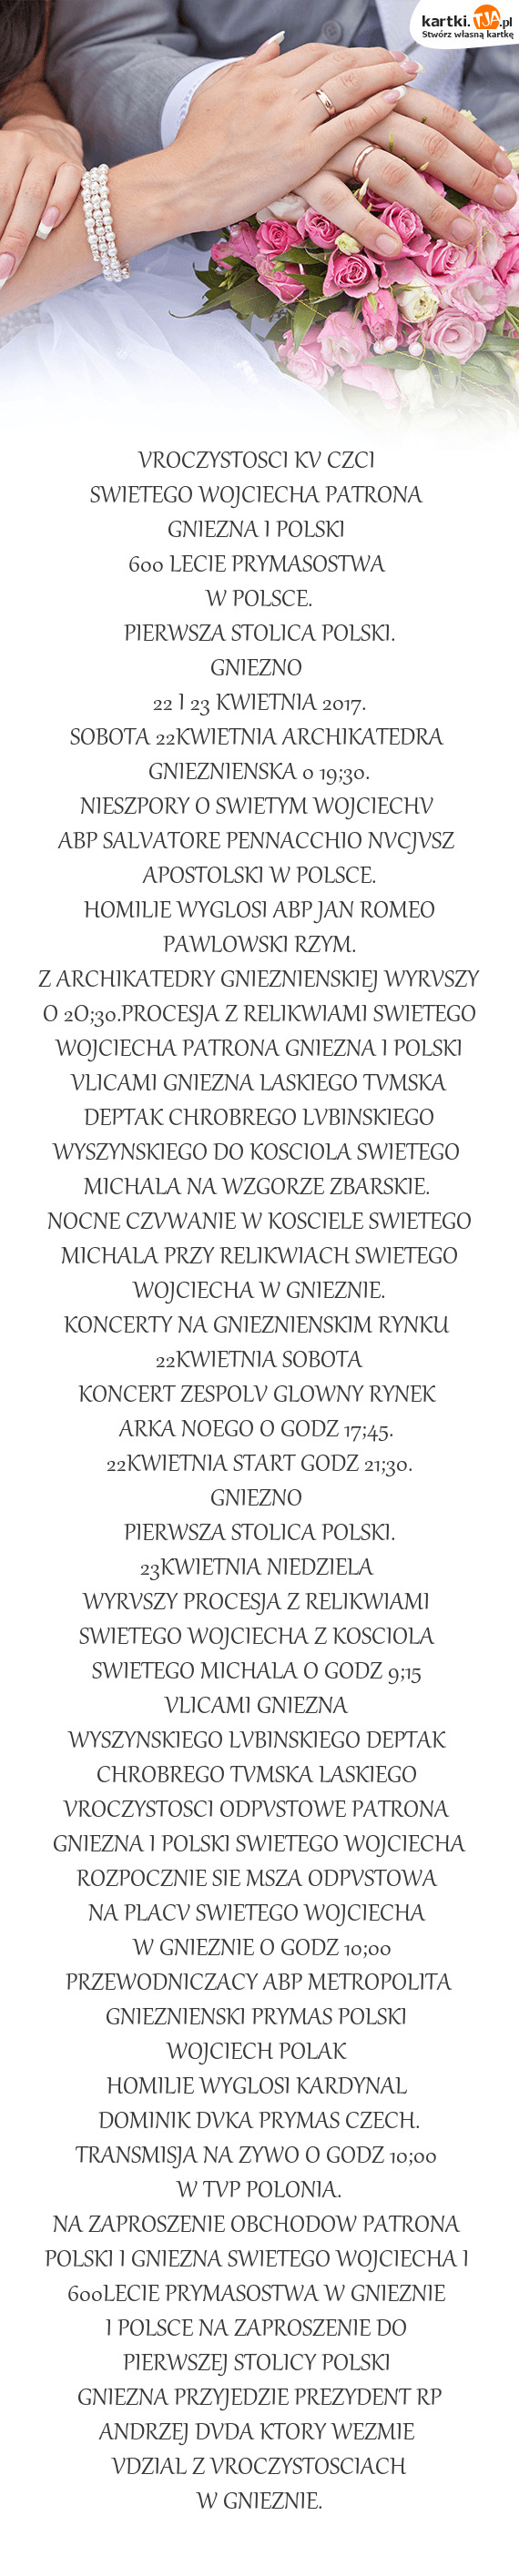 Pierwsza Stolica Polski Darmowe Kartki 5185